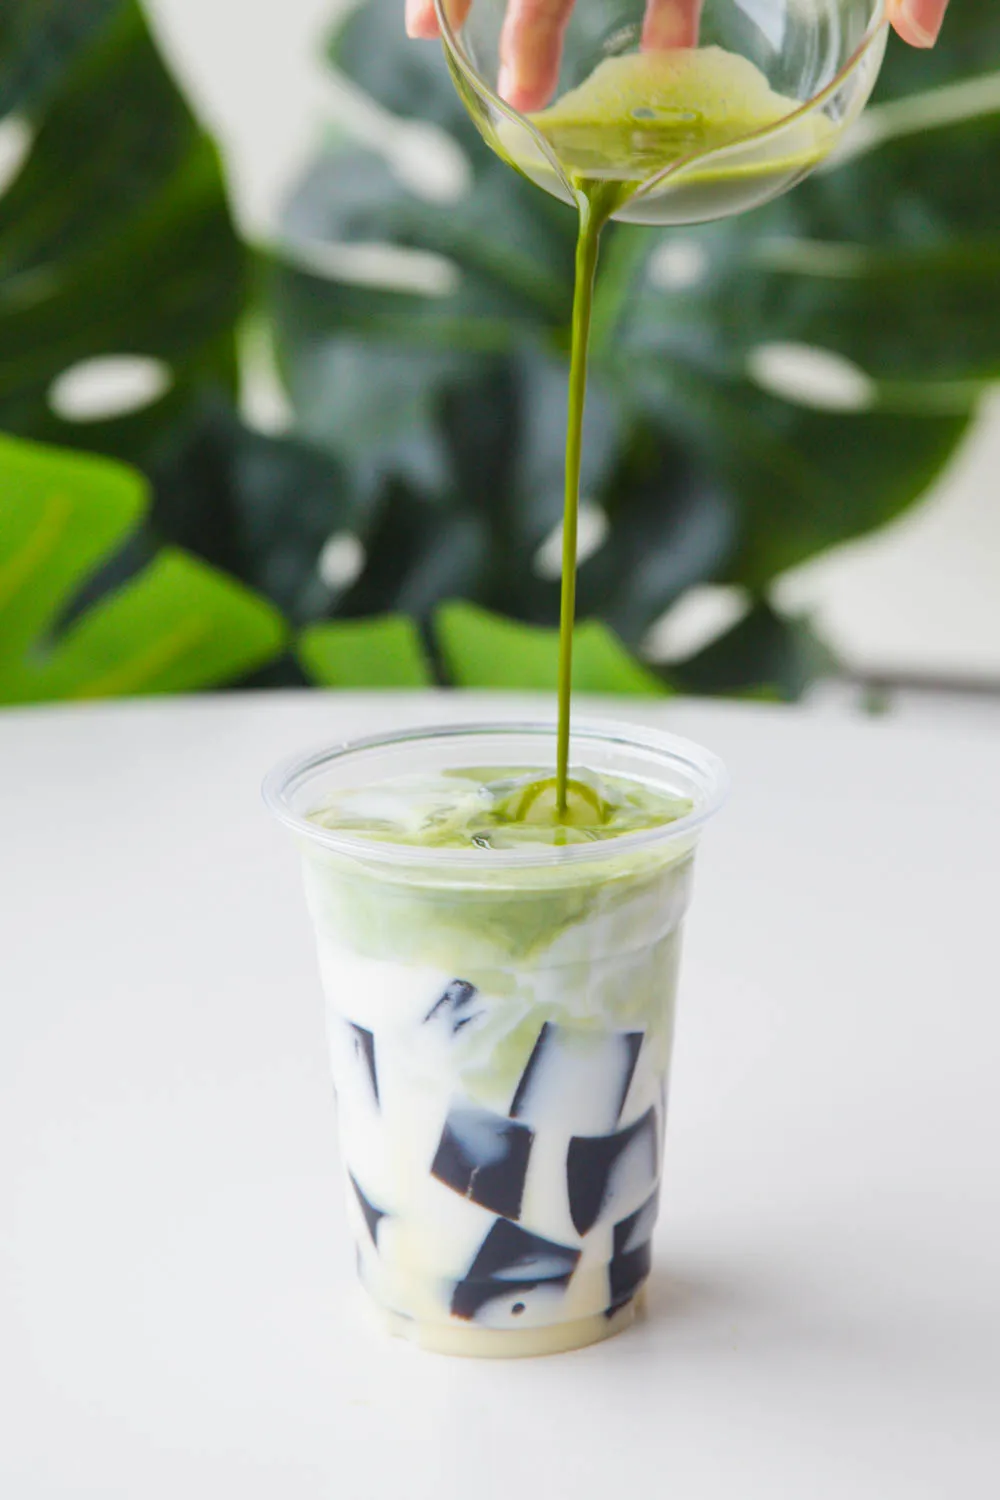 grass jelly matcha latte|chinasichuanfood.com